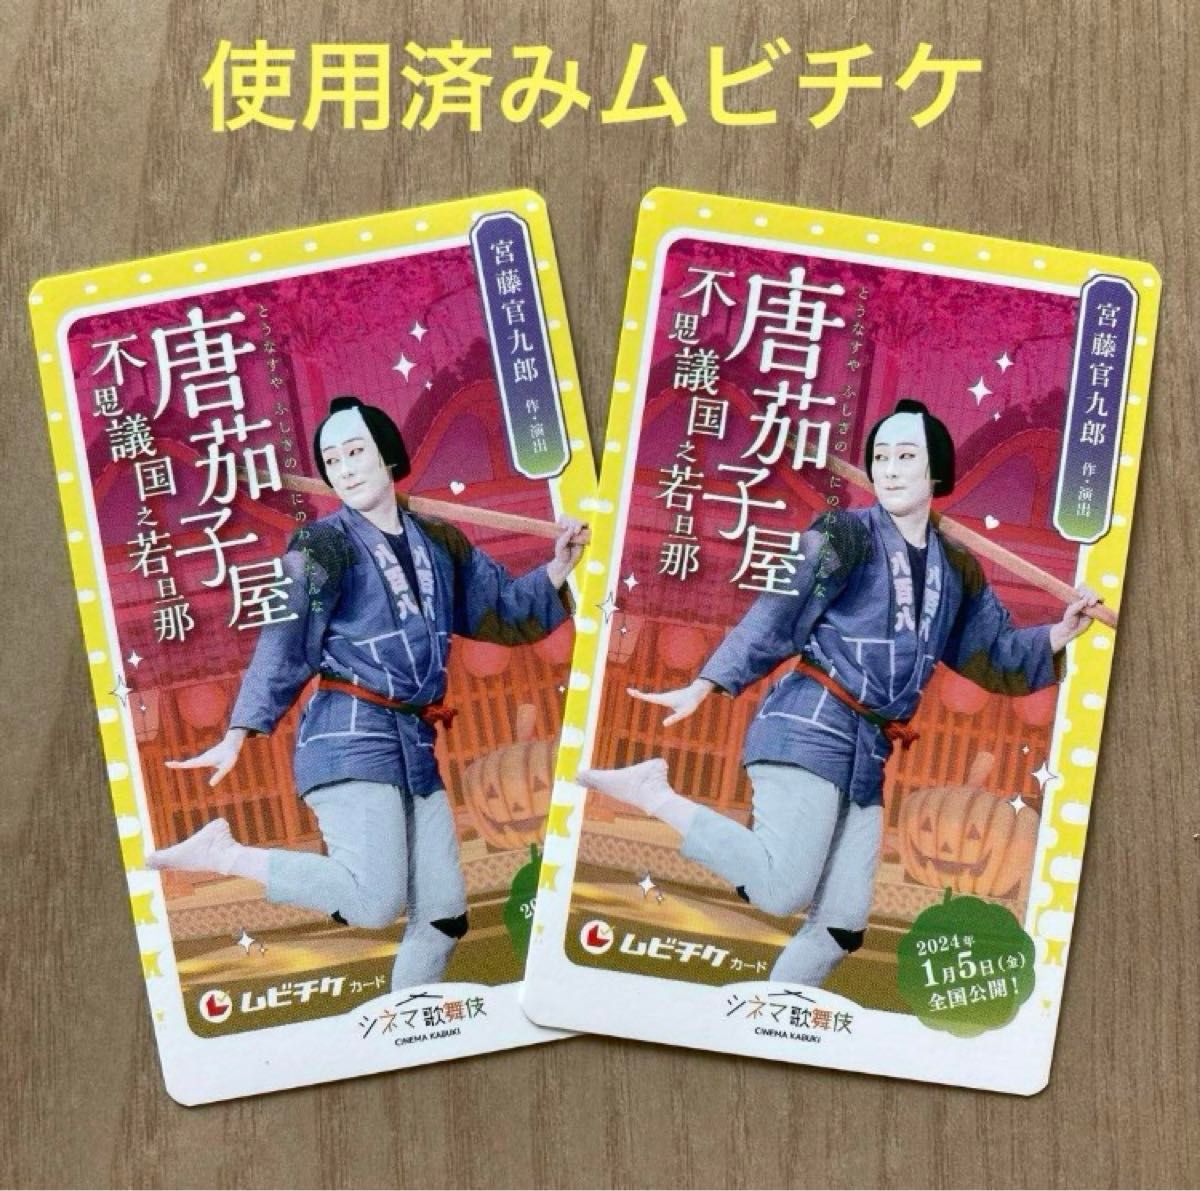 シネマ歌舞伎「唐茄子屋不思議国之若旦那」ポストカード、映画チラシ、使用済みムビチケ